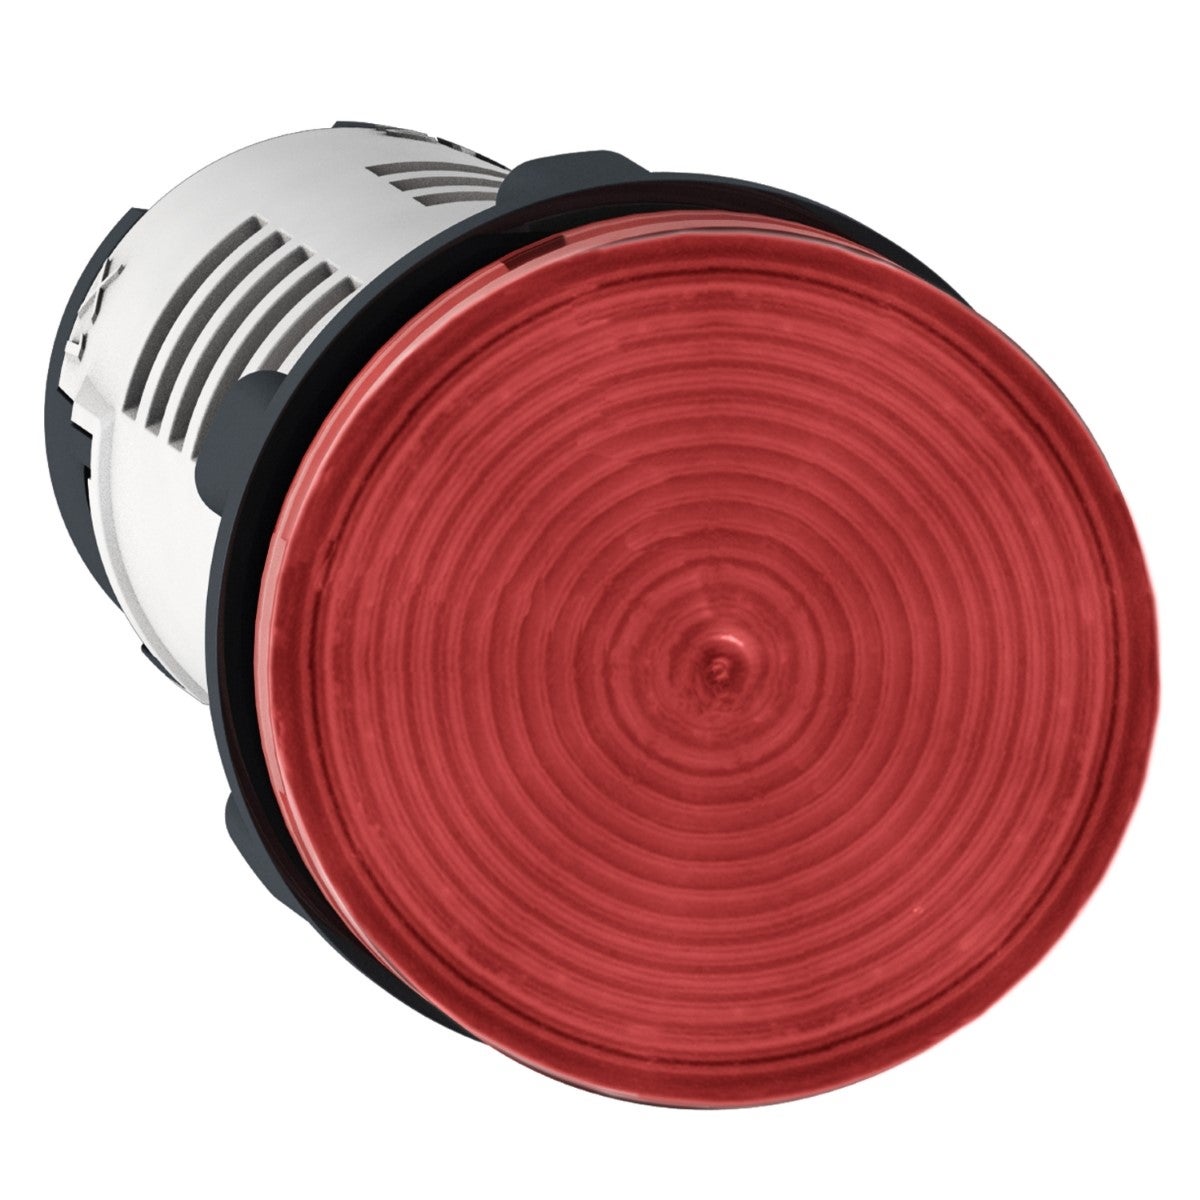 Monolithic pilot light, plastic, red, Ã˜22, integral LED, 24 V AC/DC